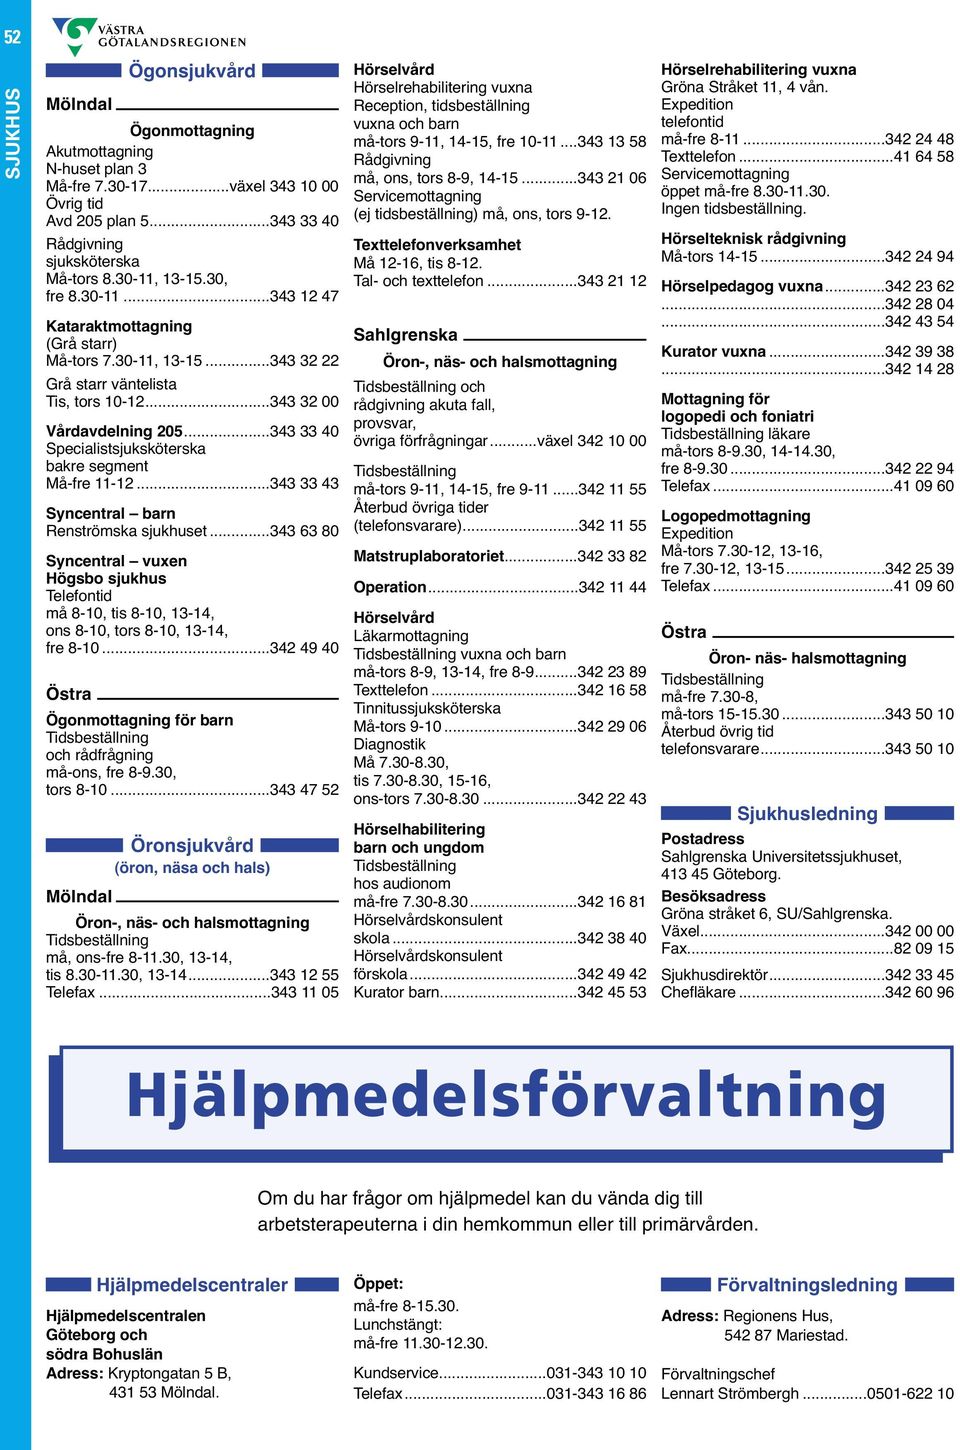 ..343 63 80 Syncentral vuxen Högsbo sjukhus må 8-10, tis 8-10, 13-14, ons 8-10, tors 8-10, 13-14, fre 8-10...342 49 40 Ögonmottagning för barn och rådfrågning må-ons, fre 8-9.30, tors 8-10.